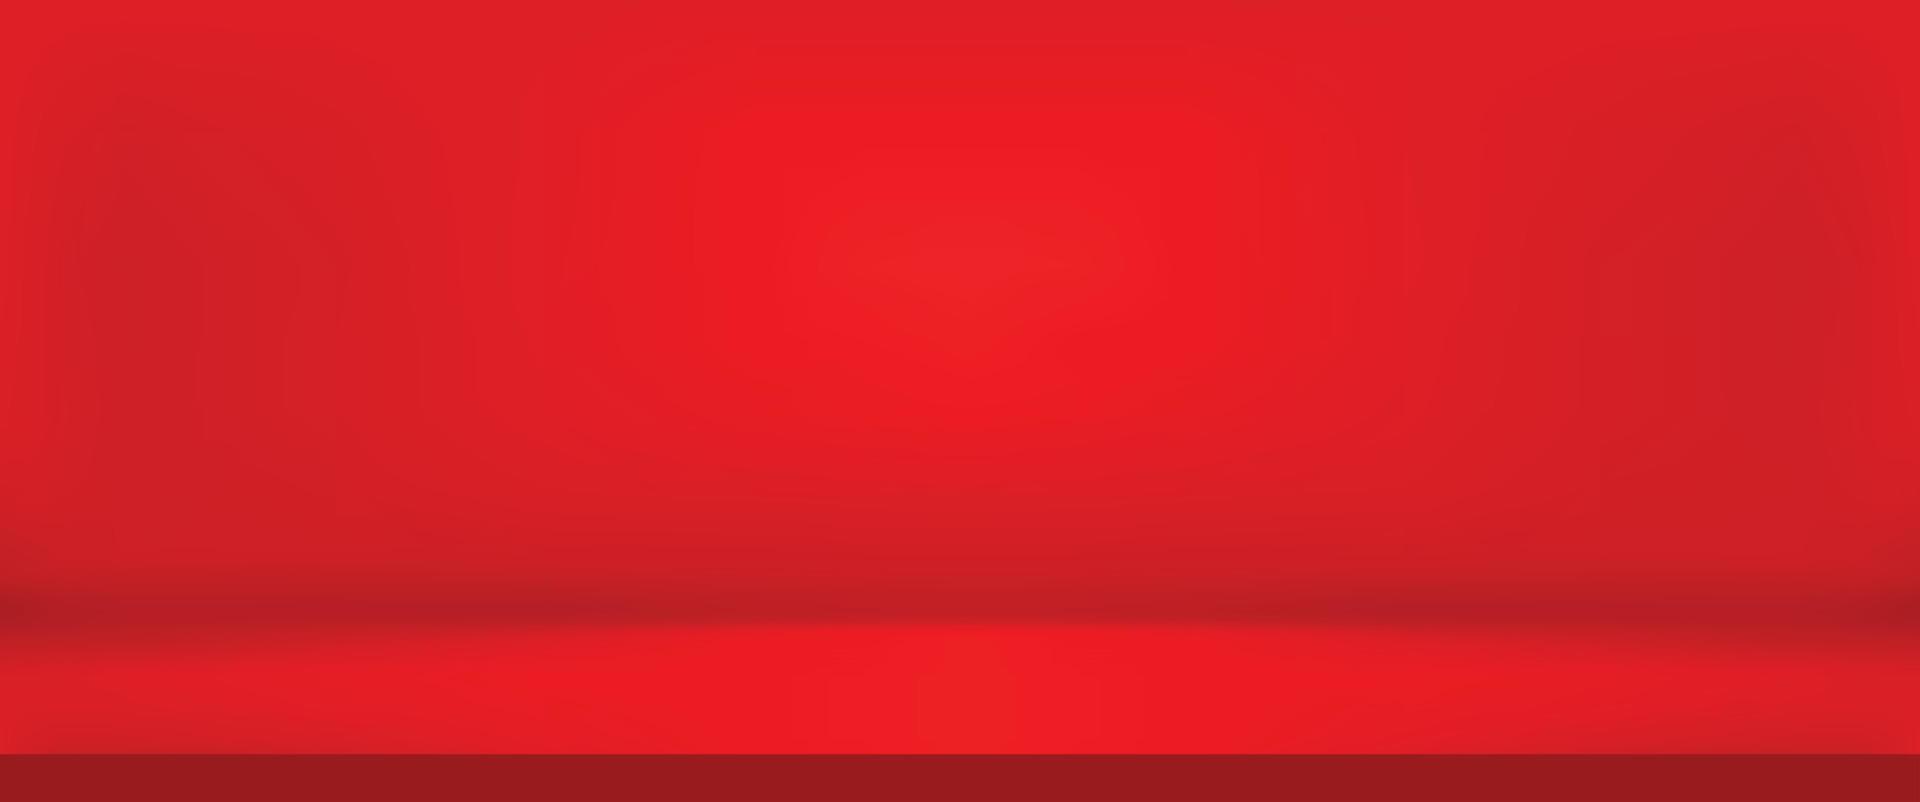 lyx röd abstrakt bakgrund. kinesisk layoutdesign, studio, rum. affärsrapport papper med mjuk gradient för banner, kort. vektor illustration